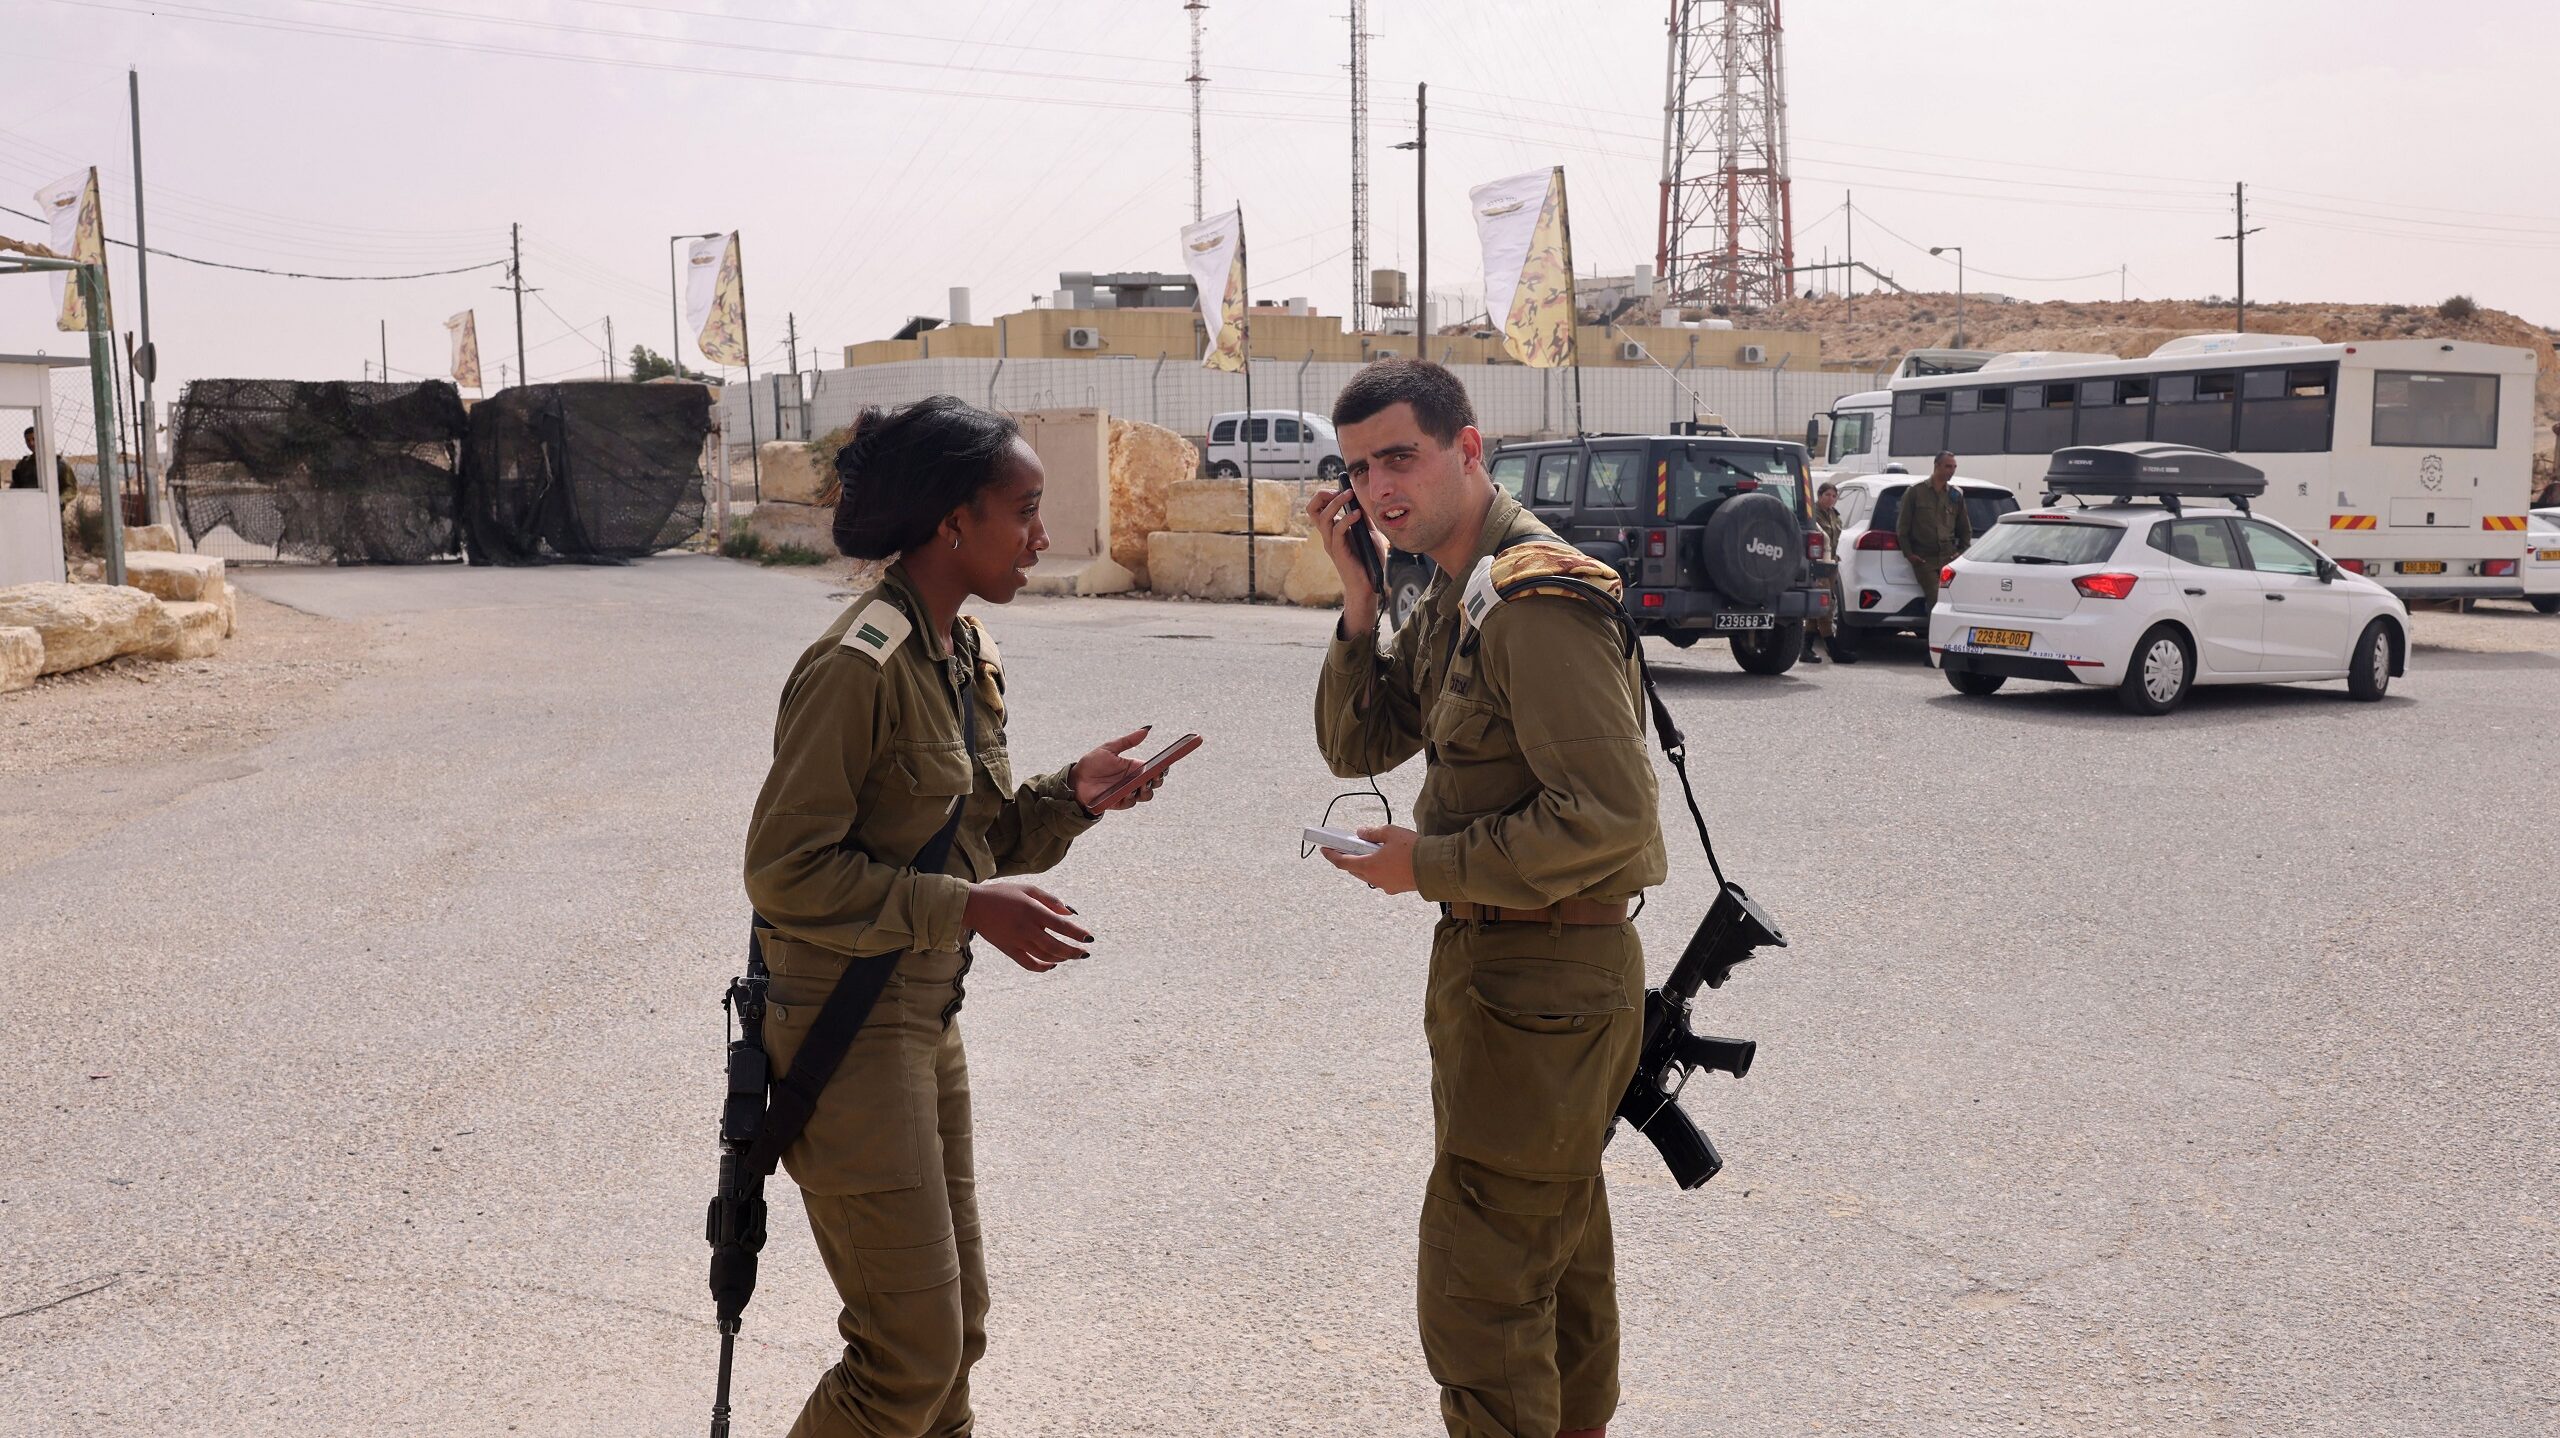 Israeli Prime Minister Promises Full Inquiry Into Border Shootings Involving Egyptian Officer